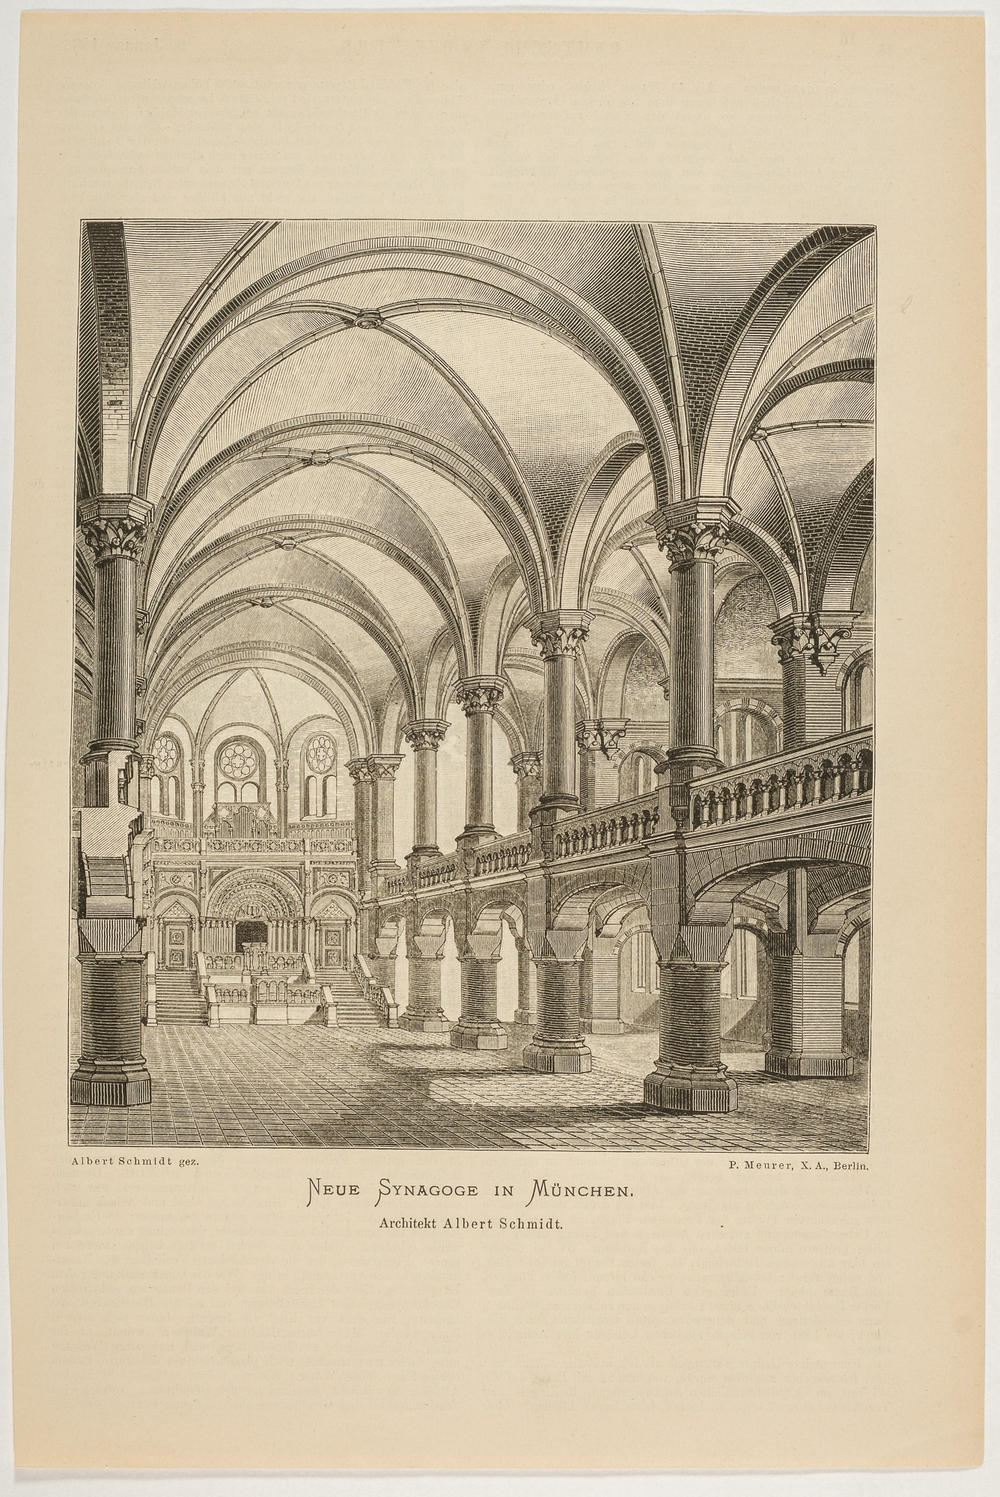 Interior of the main synagogue in Munich. Wood engraving by P. Meurer; Albert Schmidt (architect); <em>Deutsche Bauzeitung</em>; 1886.